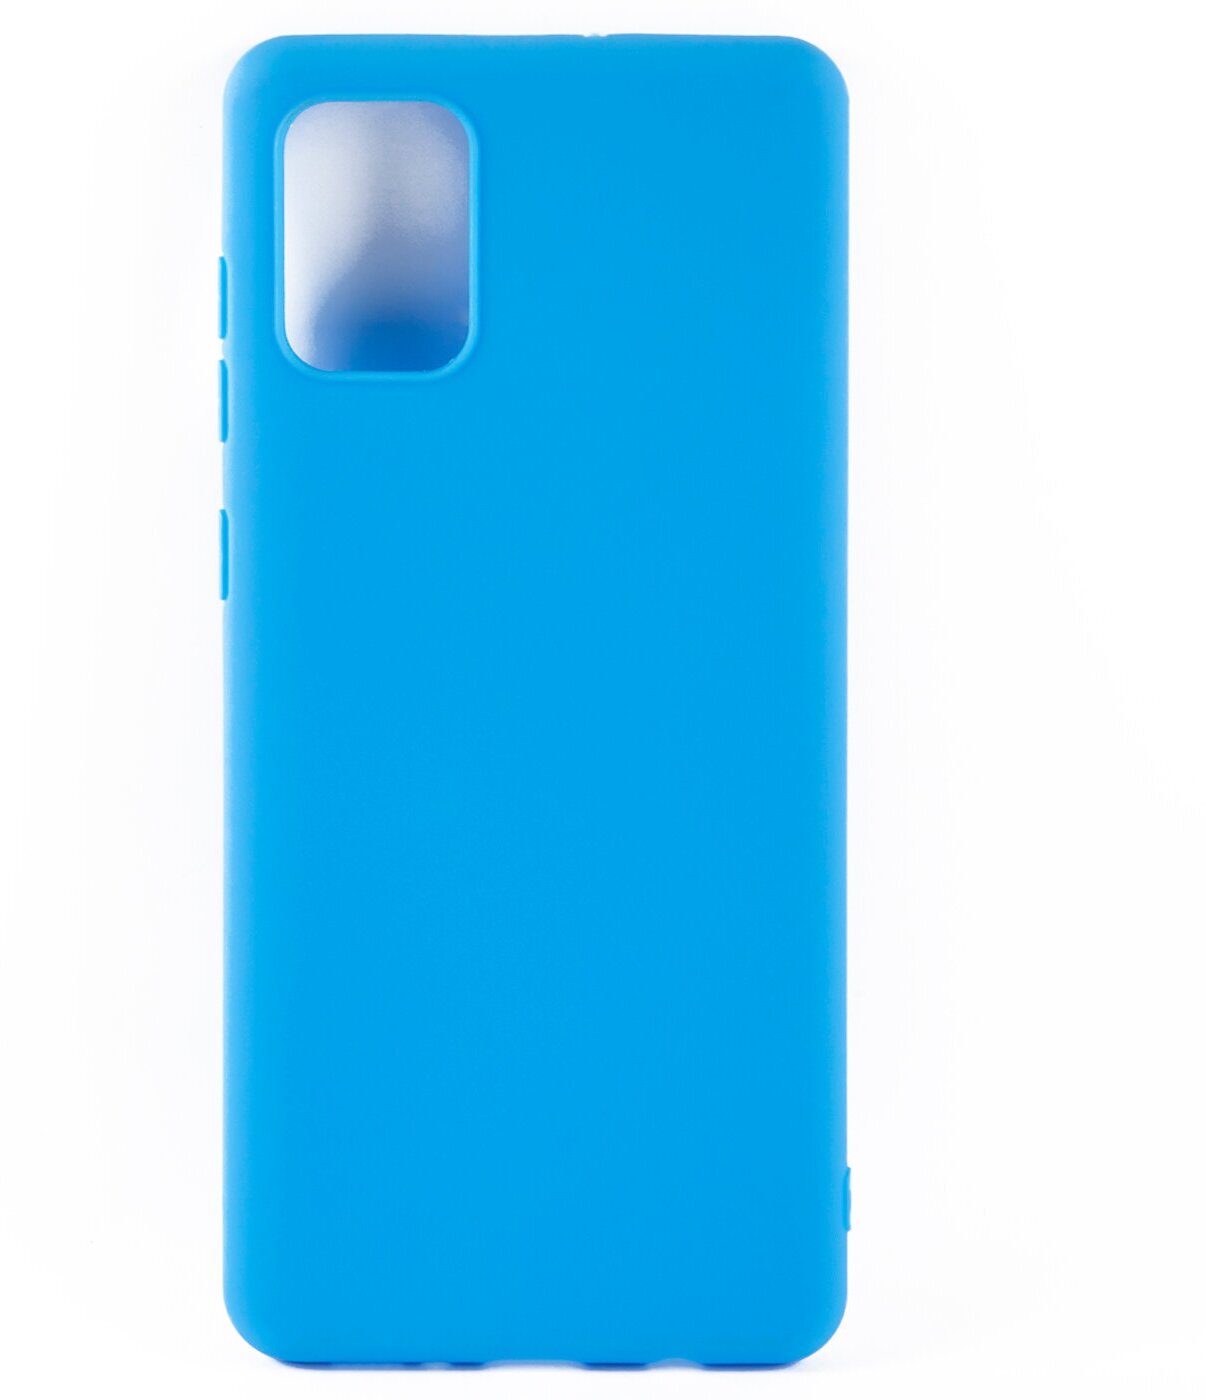 Защитный чехол для телефона Samsung Galaxy A71, A715/Самсунг Галакси А71, А715, силиконовая накладка, голубой